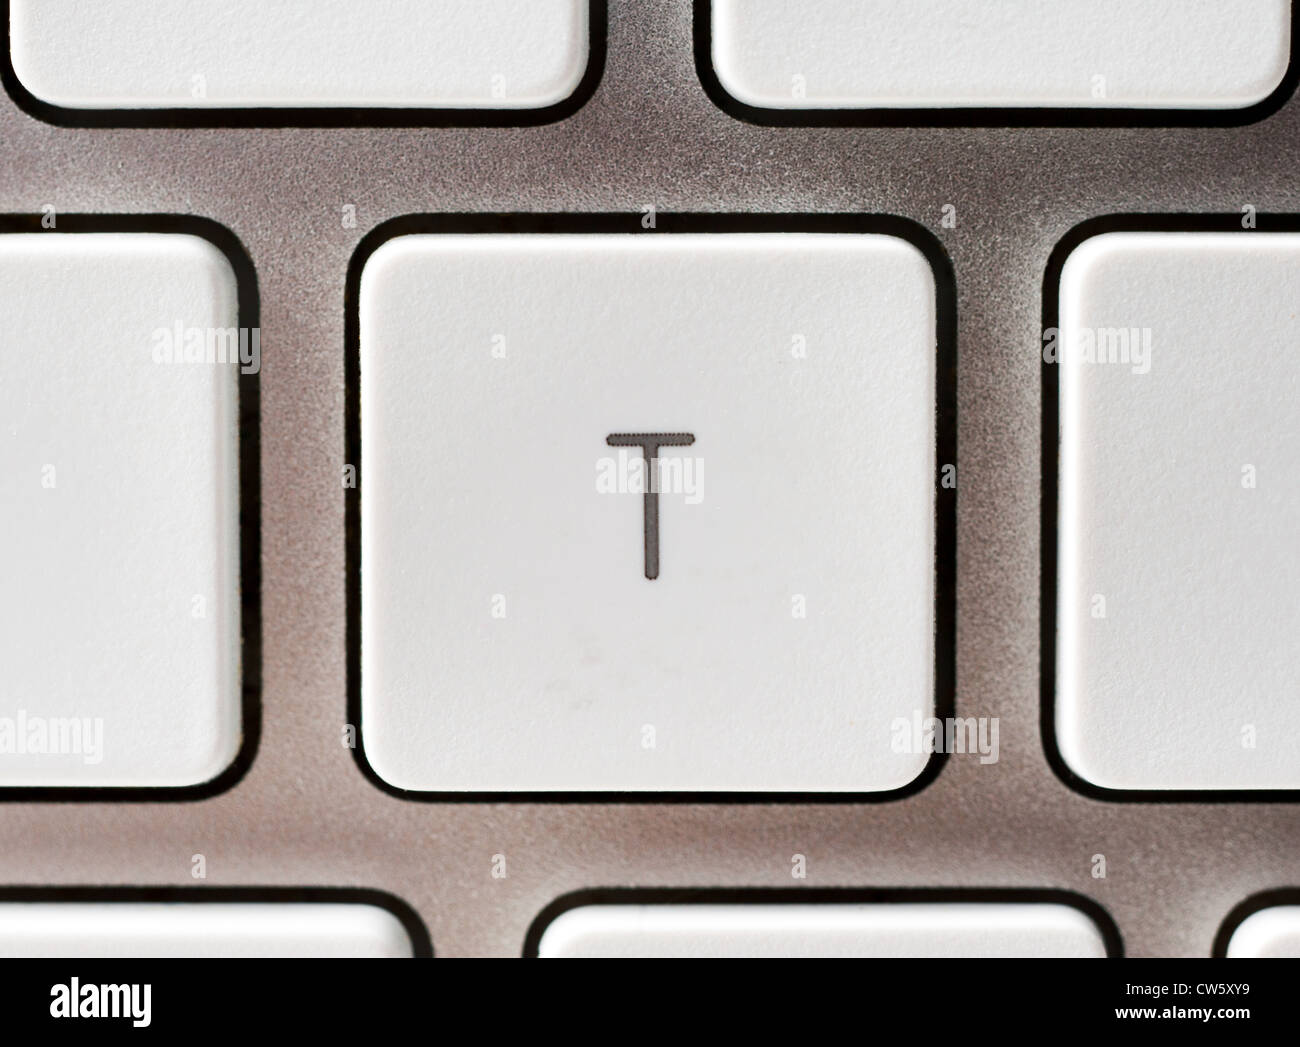 Buchstabe T auf einer Apple-Tastatur Stockfoto